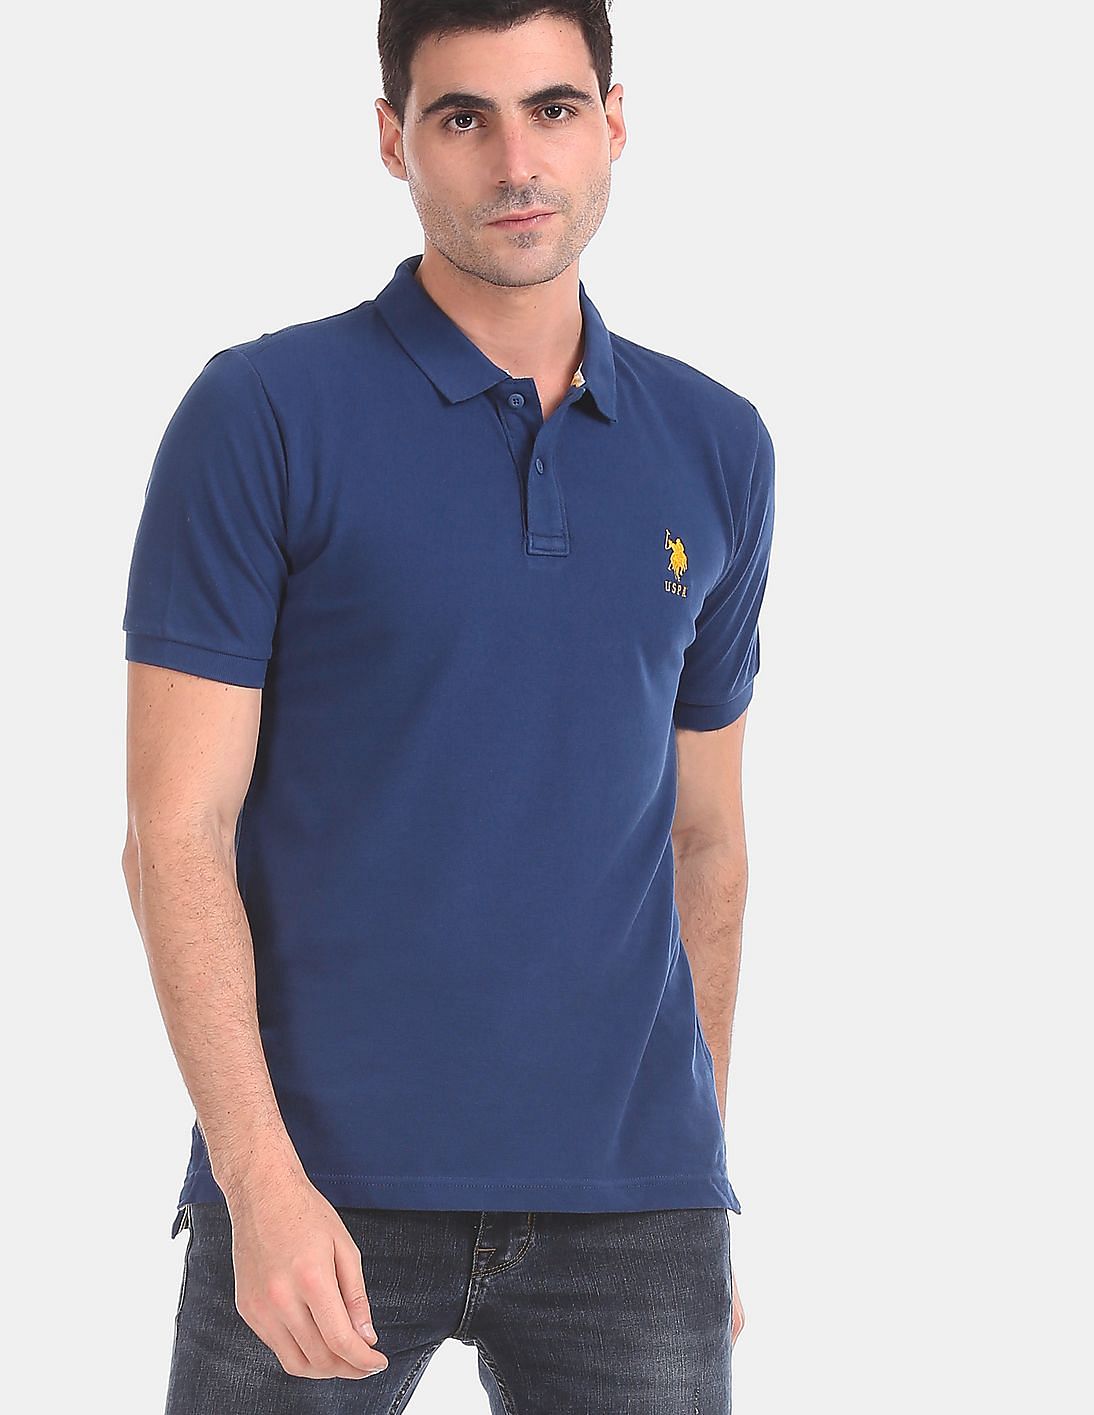 Buy U.S. Polo Assn. Men Blue Ribbed Collar Pique Polo Shirt - NNNOW.com